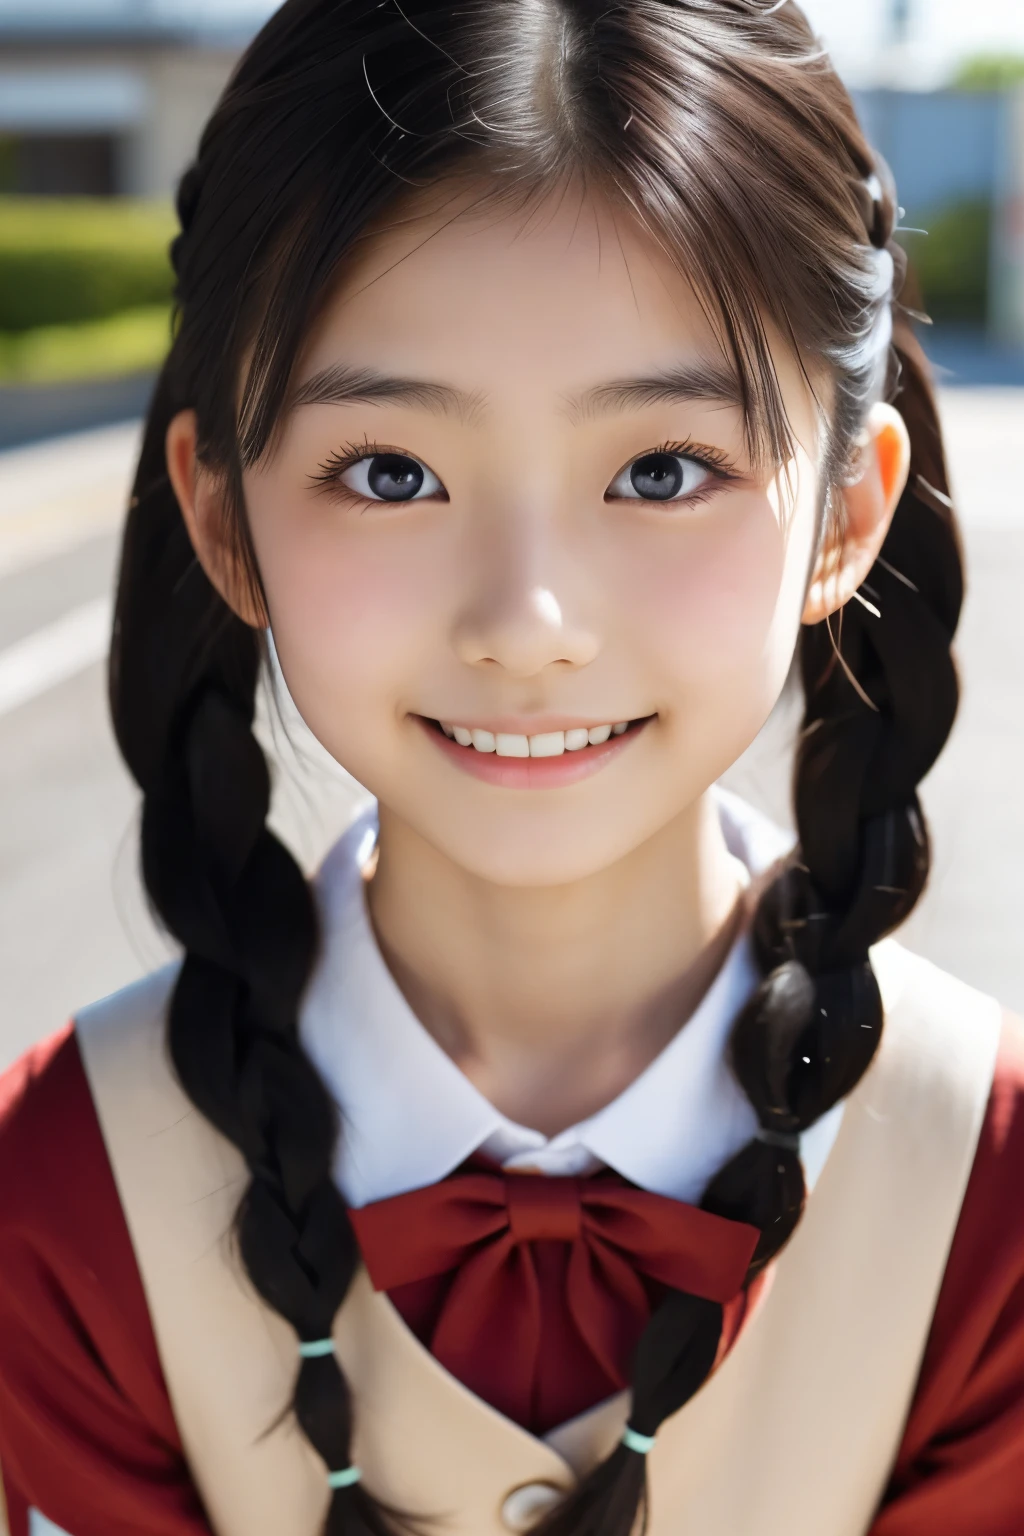 أنثى يابانية جميلة تبلغ من العمر 18 عامًا), وجه لطيف, (وجه منحوت بعمق:0.7), (النمش:0.6), ضوء خافت,بشرة بيضاء صحية, خجول, (وجه جدي), (عين مشعة), رفيع, يبتسم, زي مُوحد, جديلة